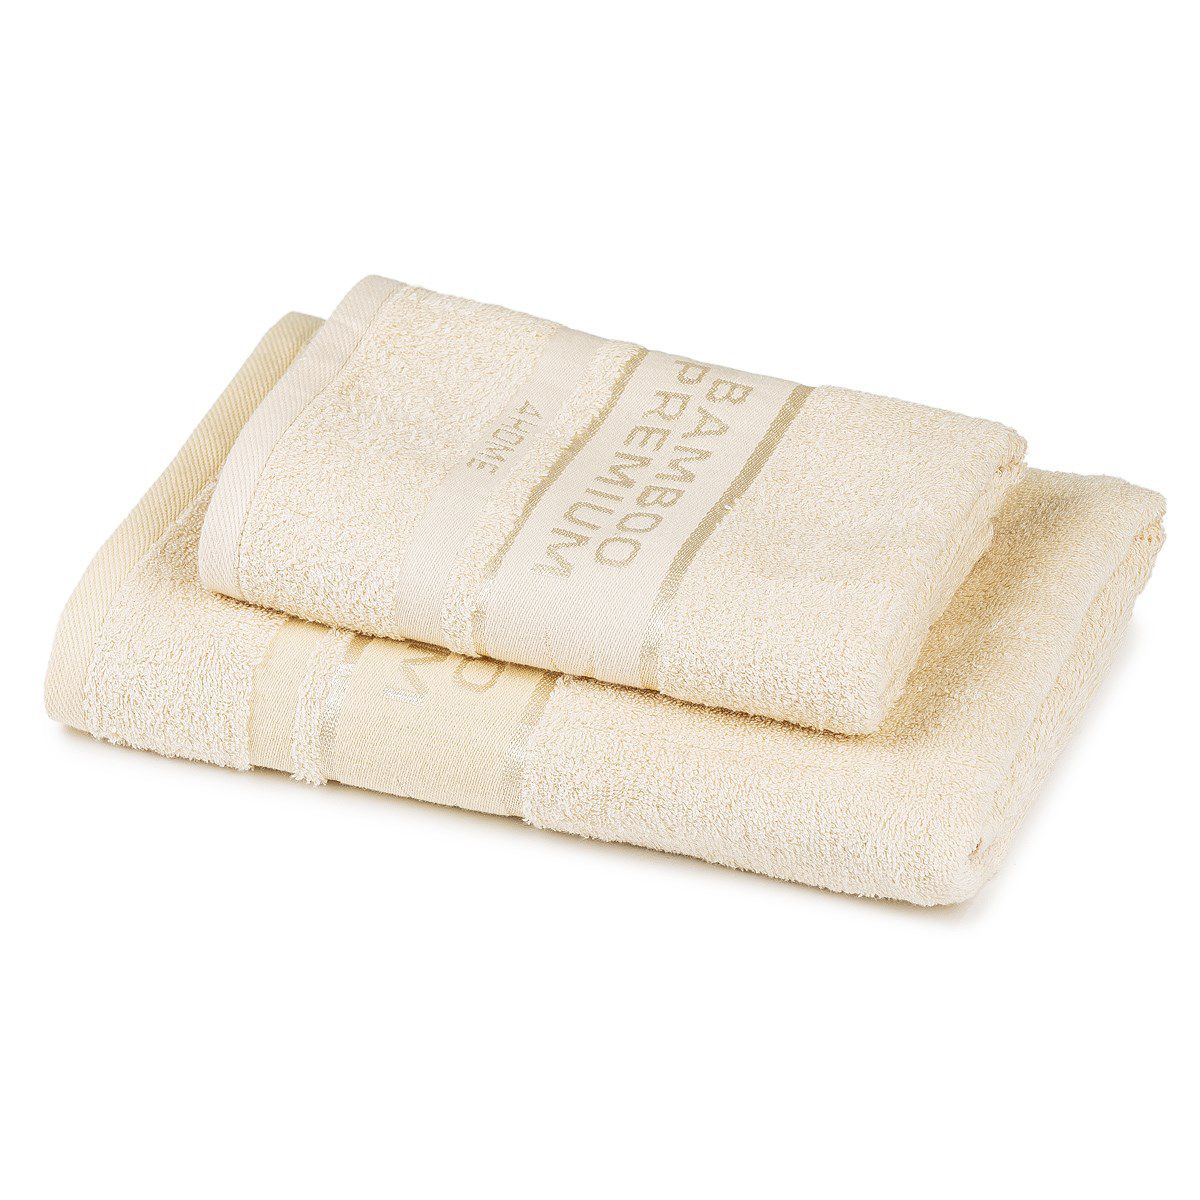 4Home Sada Bamboo Premium osuška a ručník krémová, 70 x 140 cm, 50 x 100 cm - 4home.cz